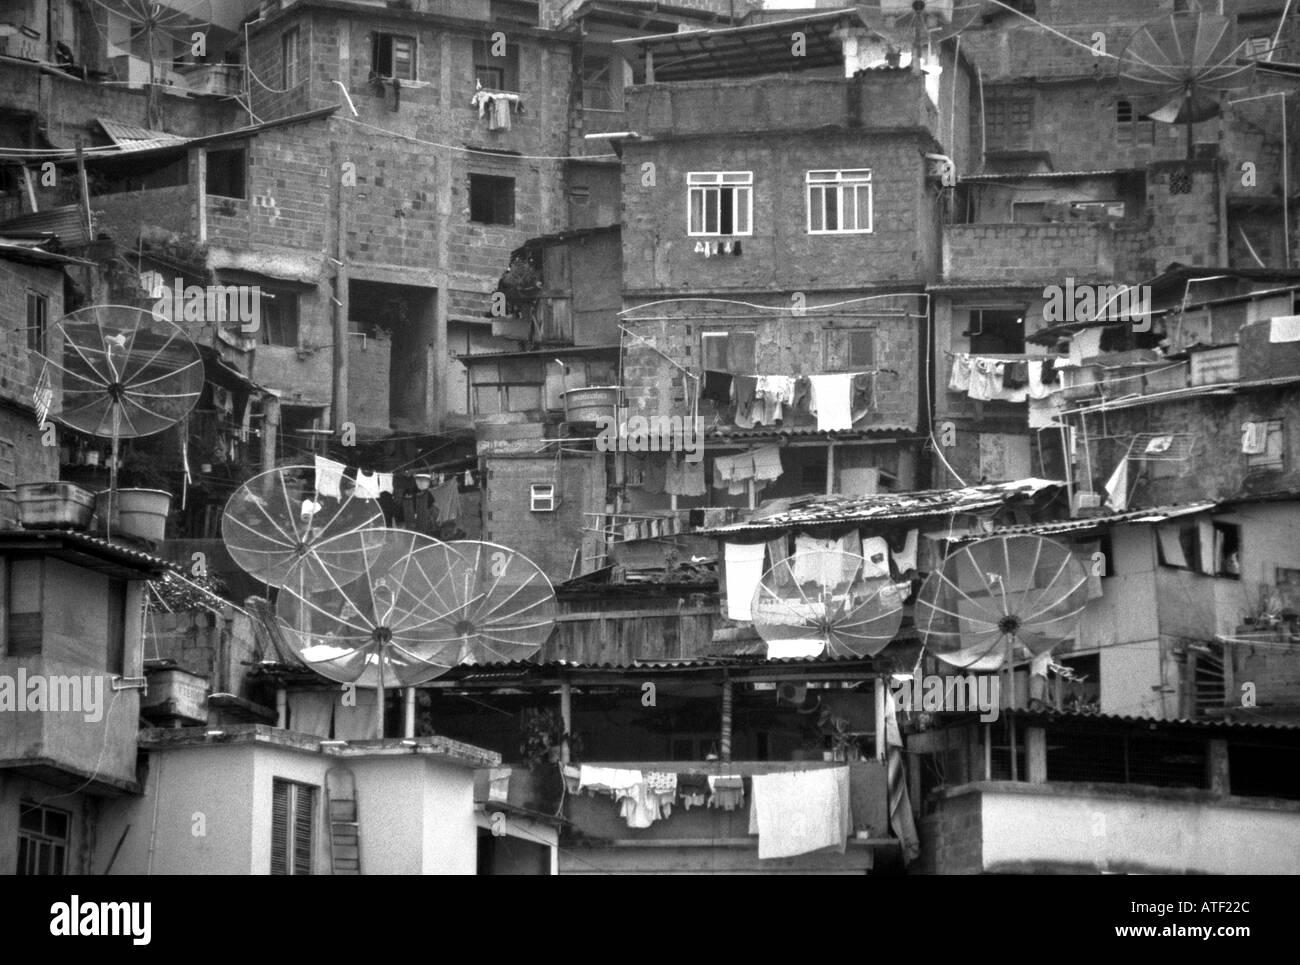 Panorama Wohnstätten gebaut Top gegenseitig großen Fernseher Parabolantenne S. Marta Rio de Janeiro Brasilien Brasil Süden Lateinamerikas Stockfoto